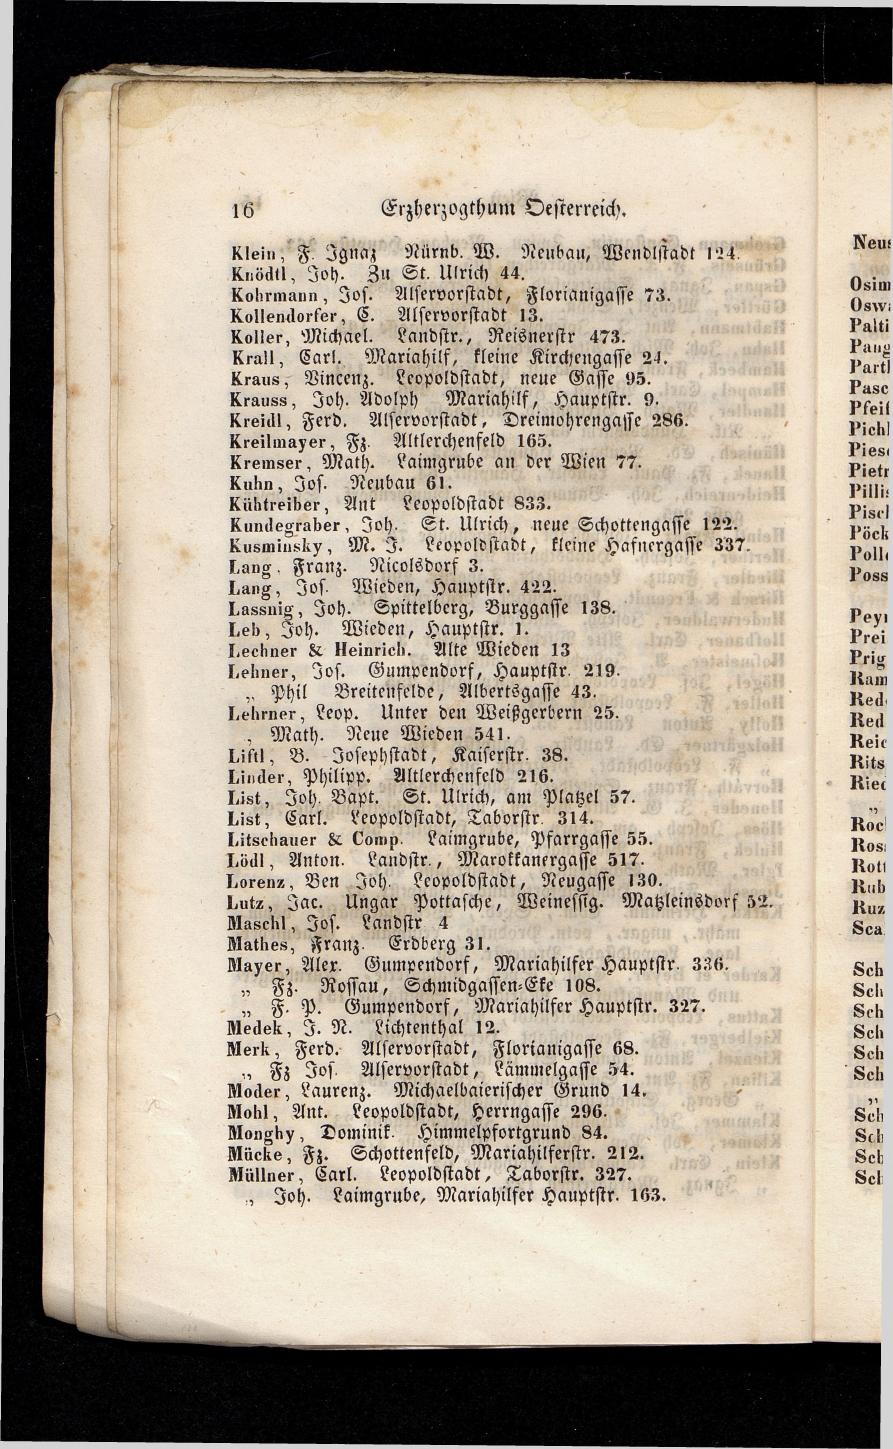 Grosses Adressbuch der Kaufleute. No. 13. Oesterreich ober u. unter der Enns 1844 - Seite 20